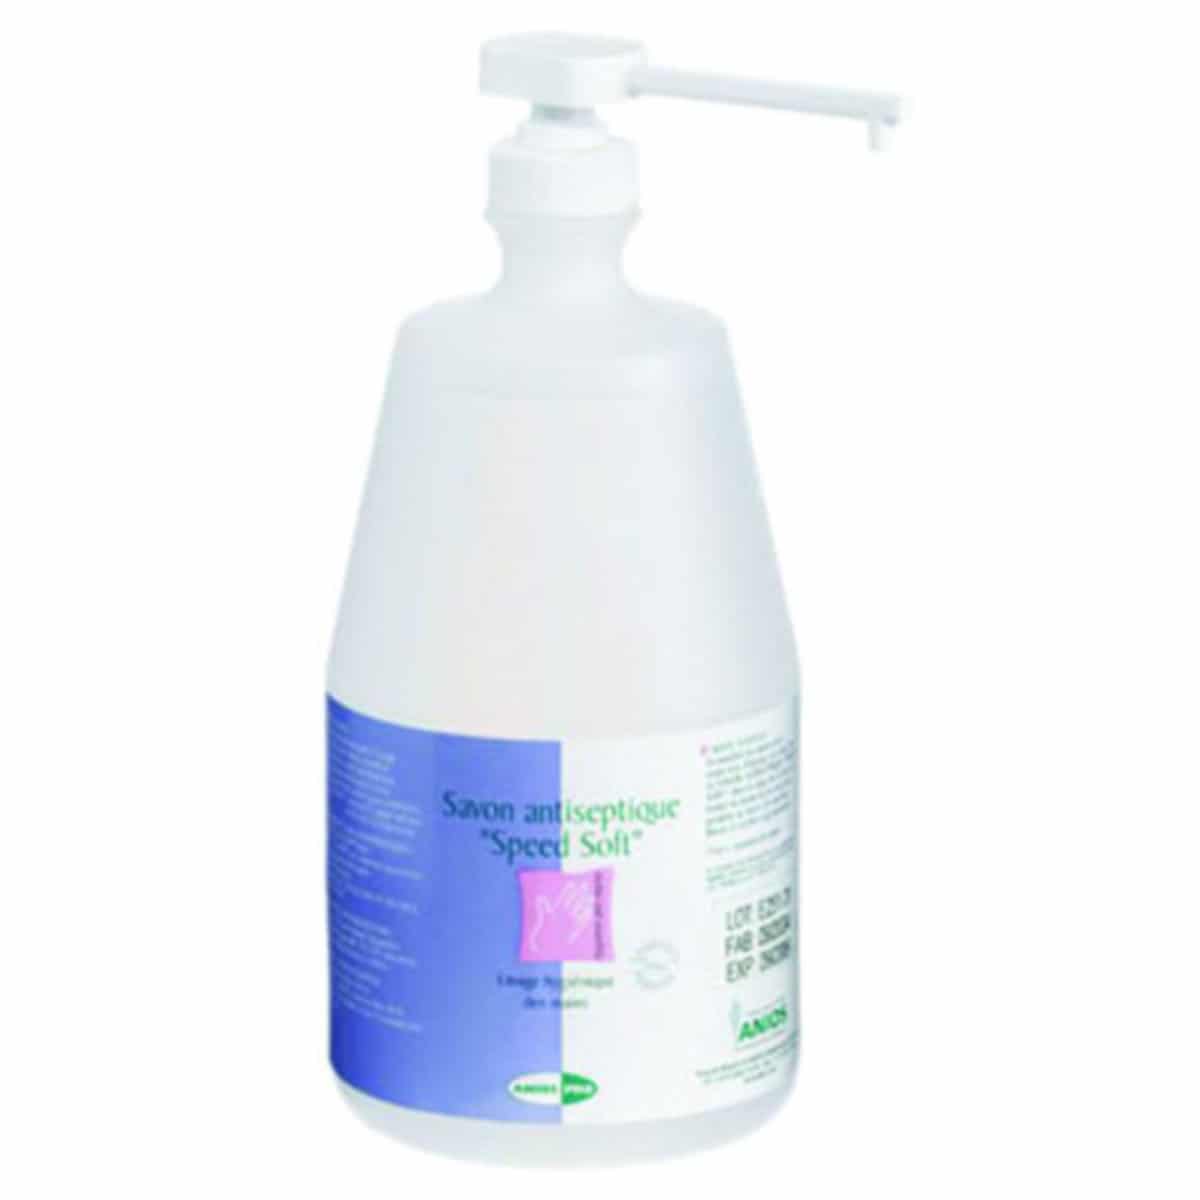 Savon antiseptique pour le lavage hygiénique des mains en milieu alimentaire et médicale - PRO Speed Soft Prémium - ANIOS_0